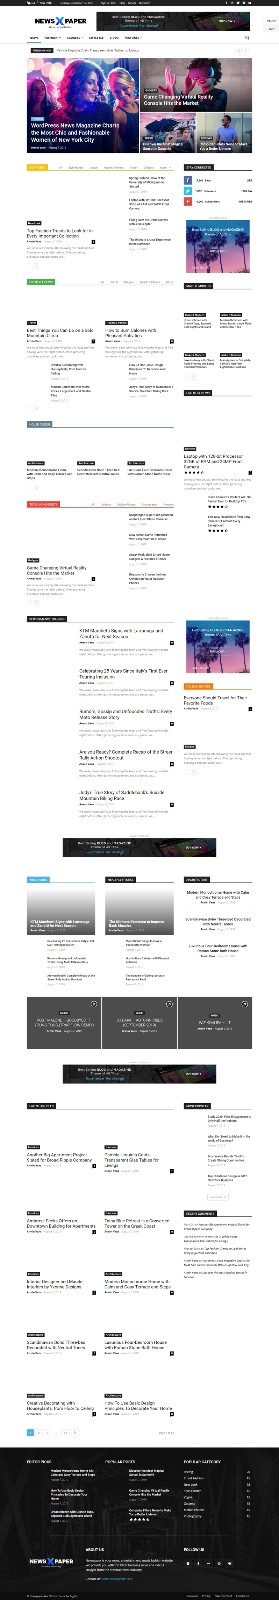 WordPress主题 Newspaper PRO专业版完美的博客和新闻类主题模板